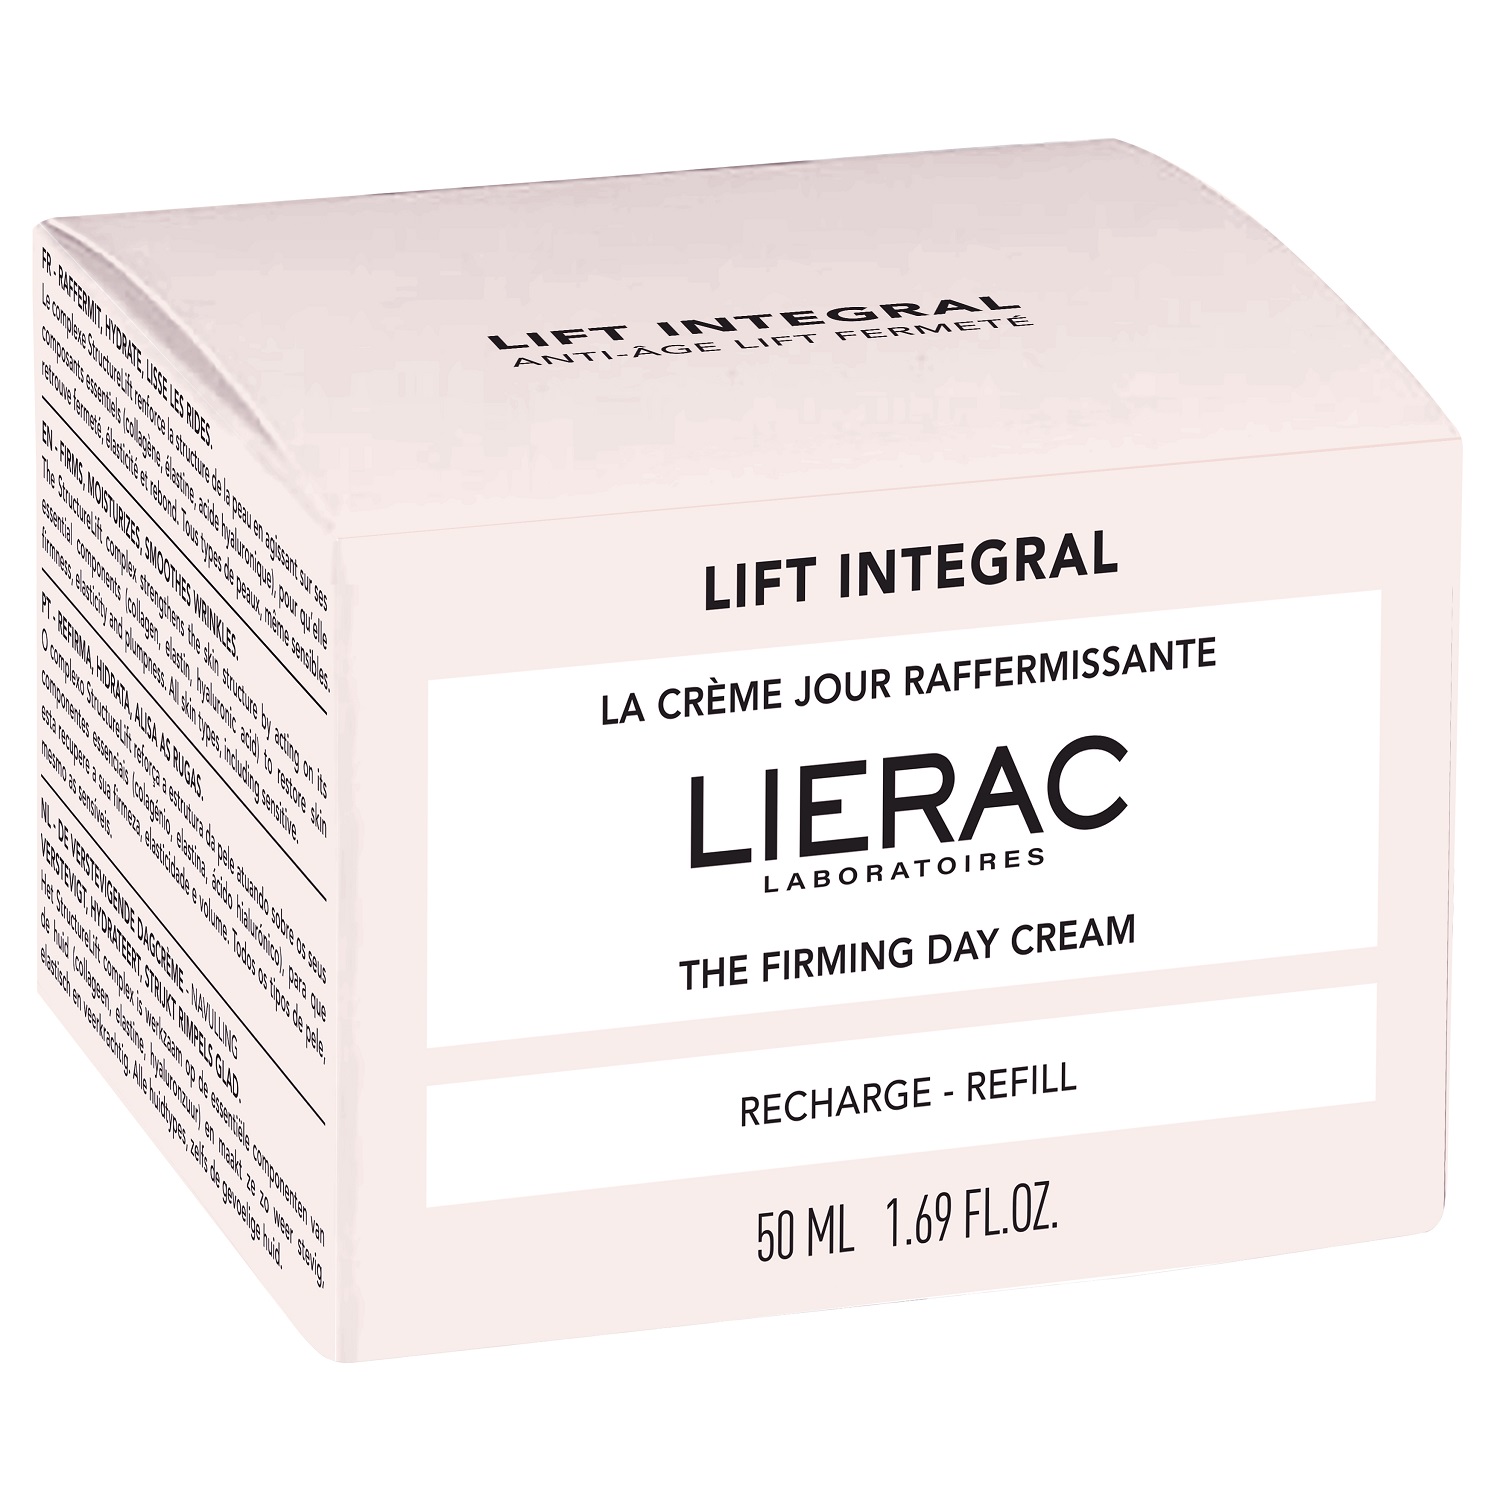 Lierac Укрепляющий дневной крем-лифтинг для лица, сменный блок 50 мл (Lierac, Lift Integral) lift integral neck